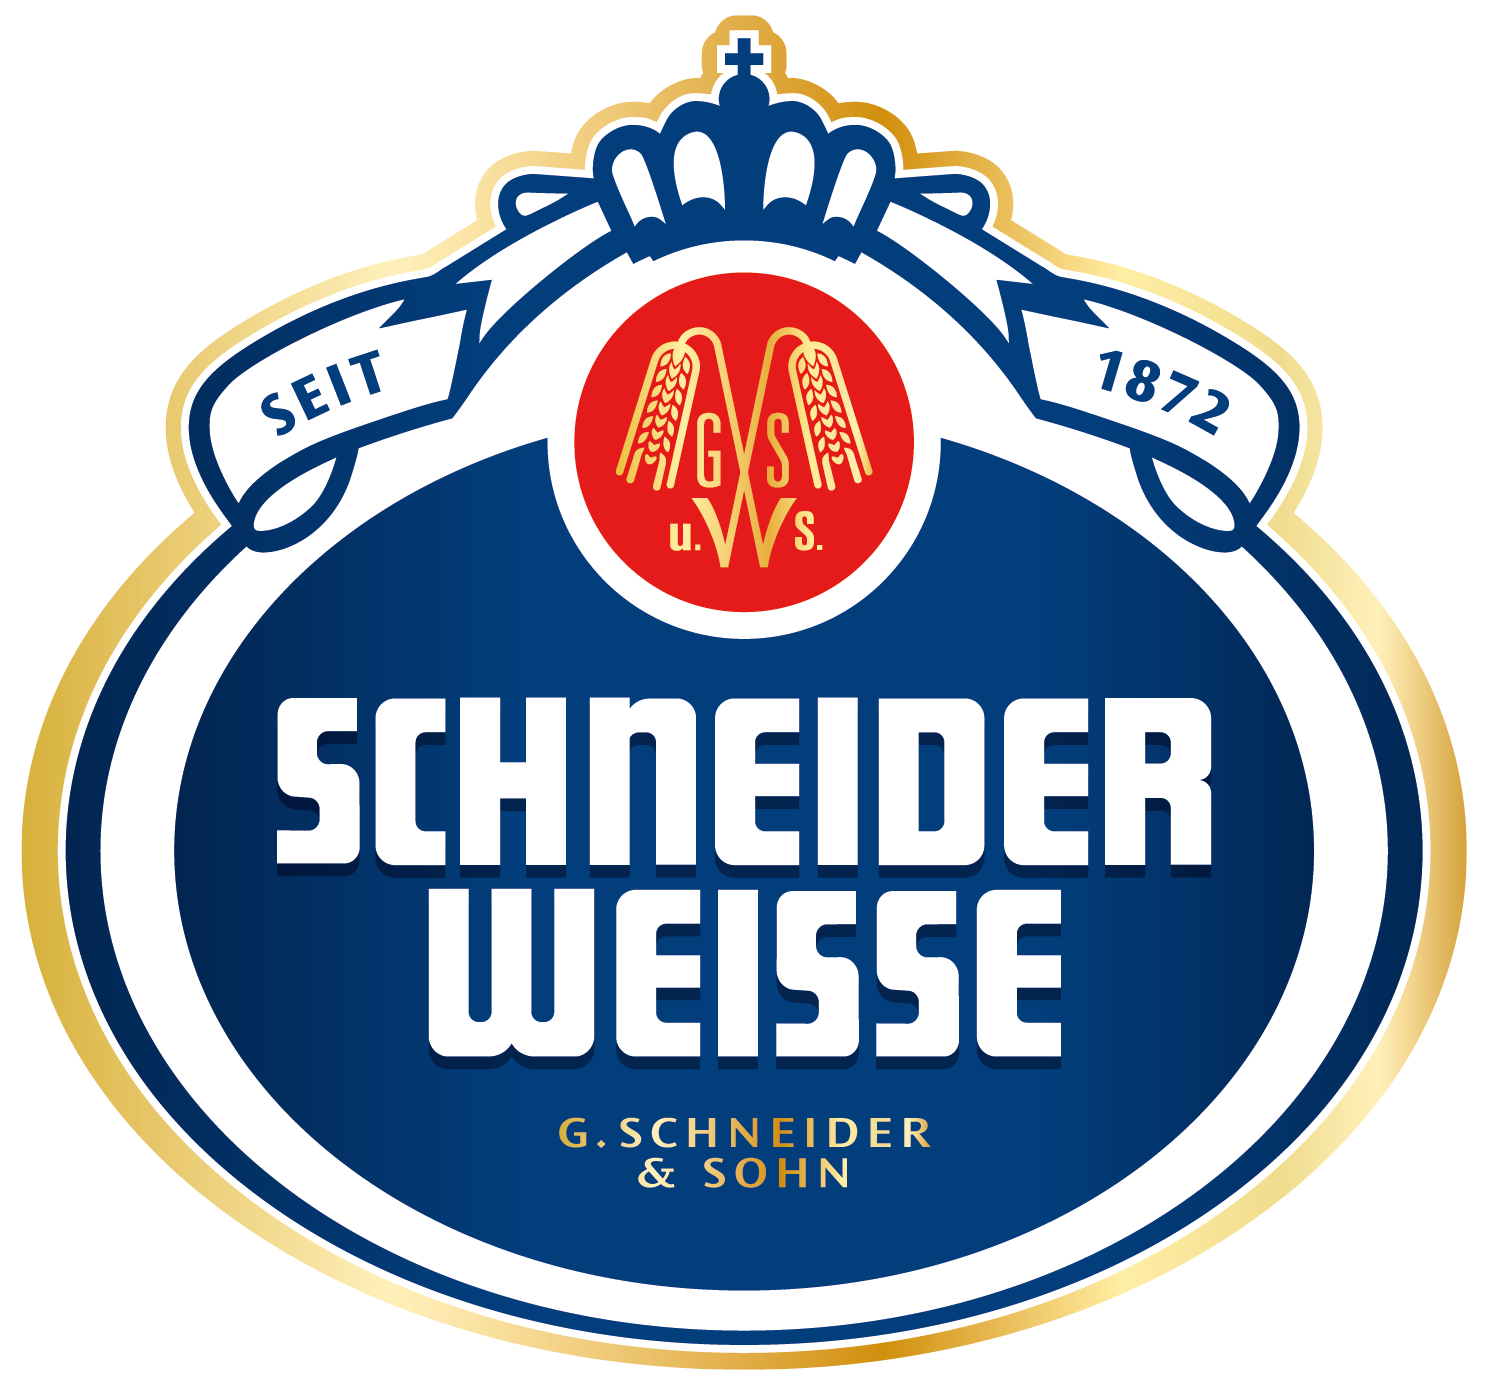 Schneider Weisse